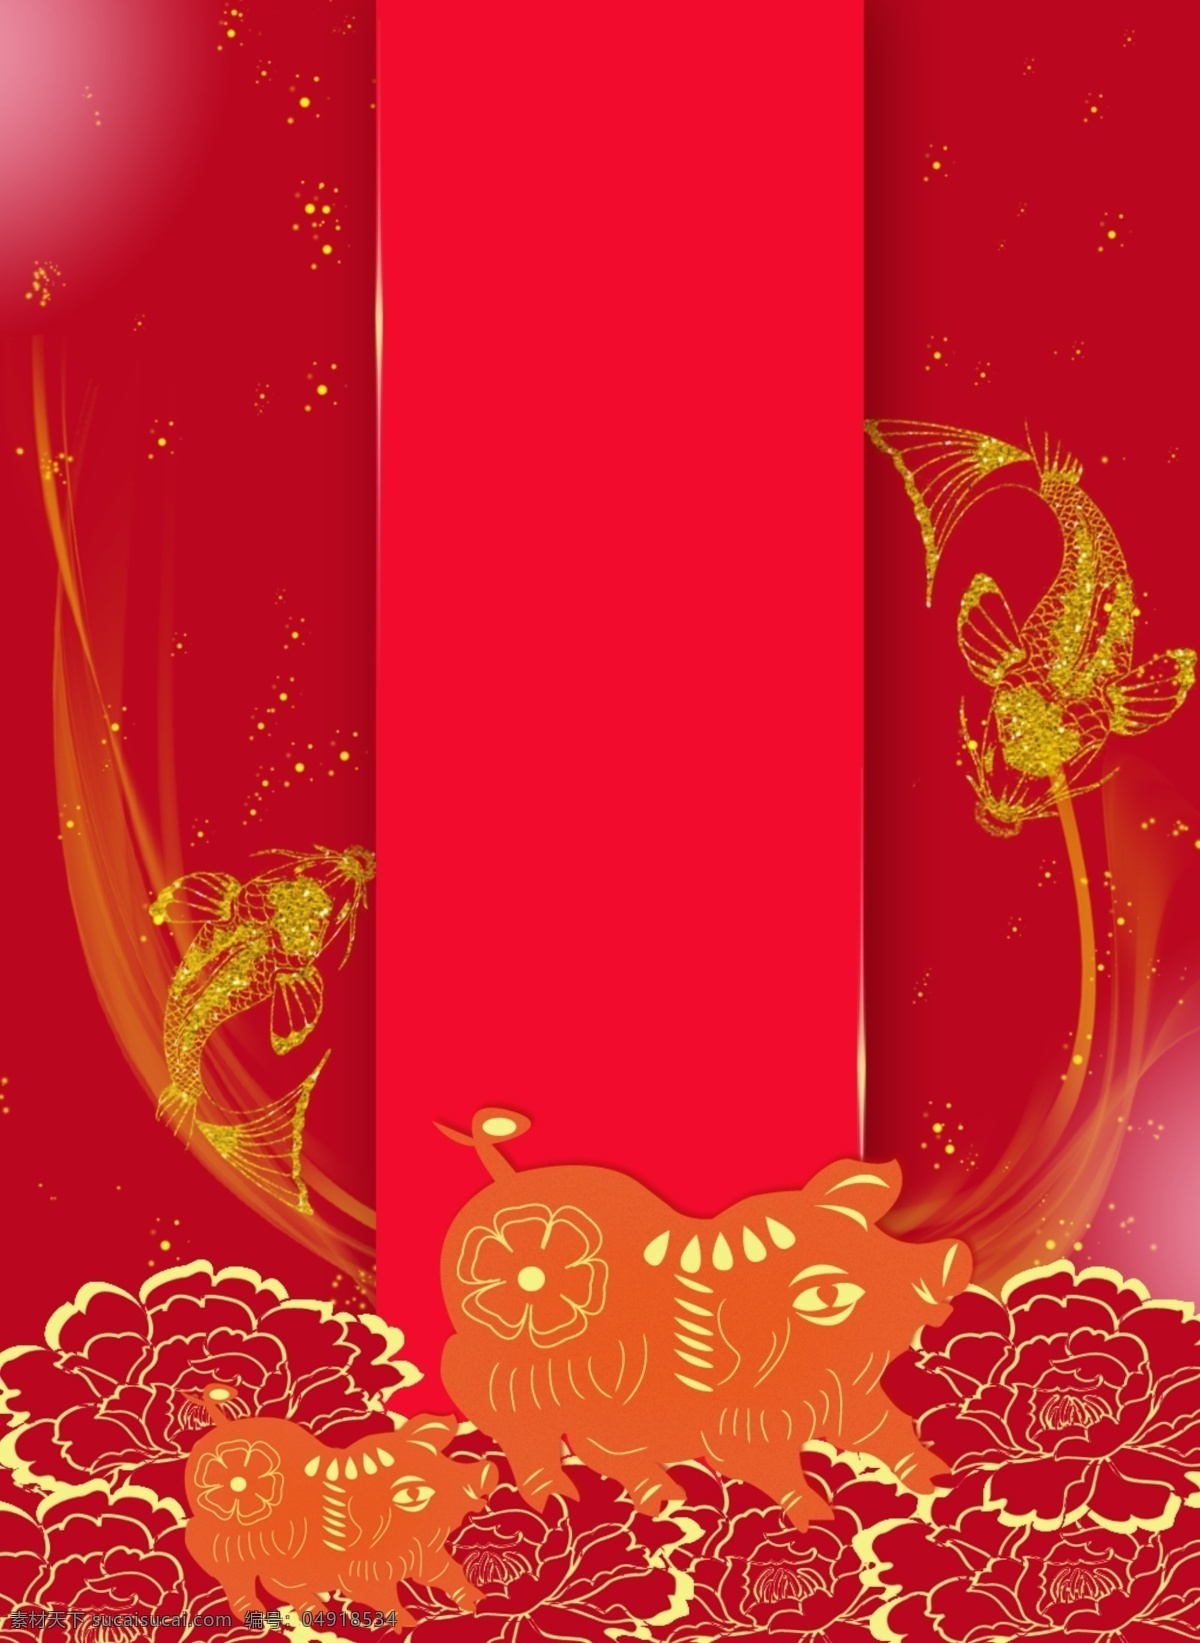 原创 新年 喜庆 红色 金 锦 锂 猪年 背景 新年喜庆 节日 过年 红色金锦锂 猪年背景 金锦鲤